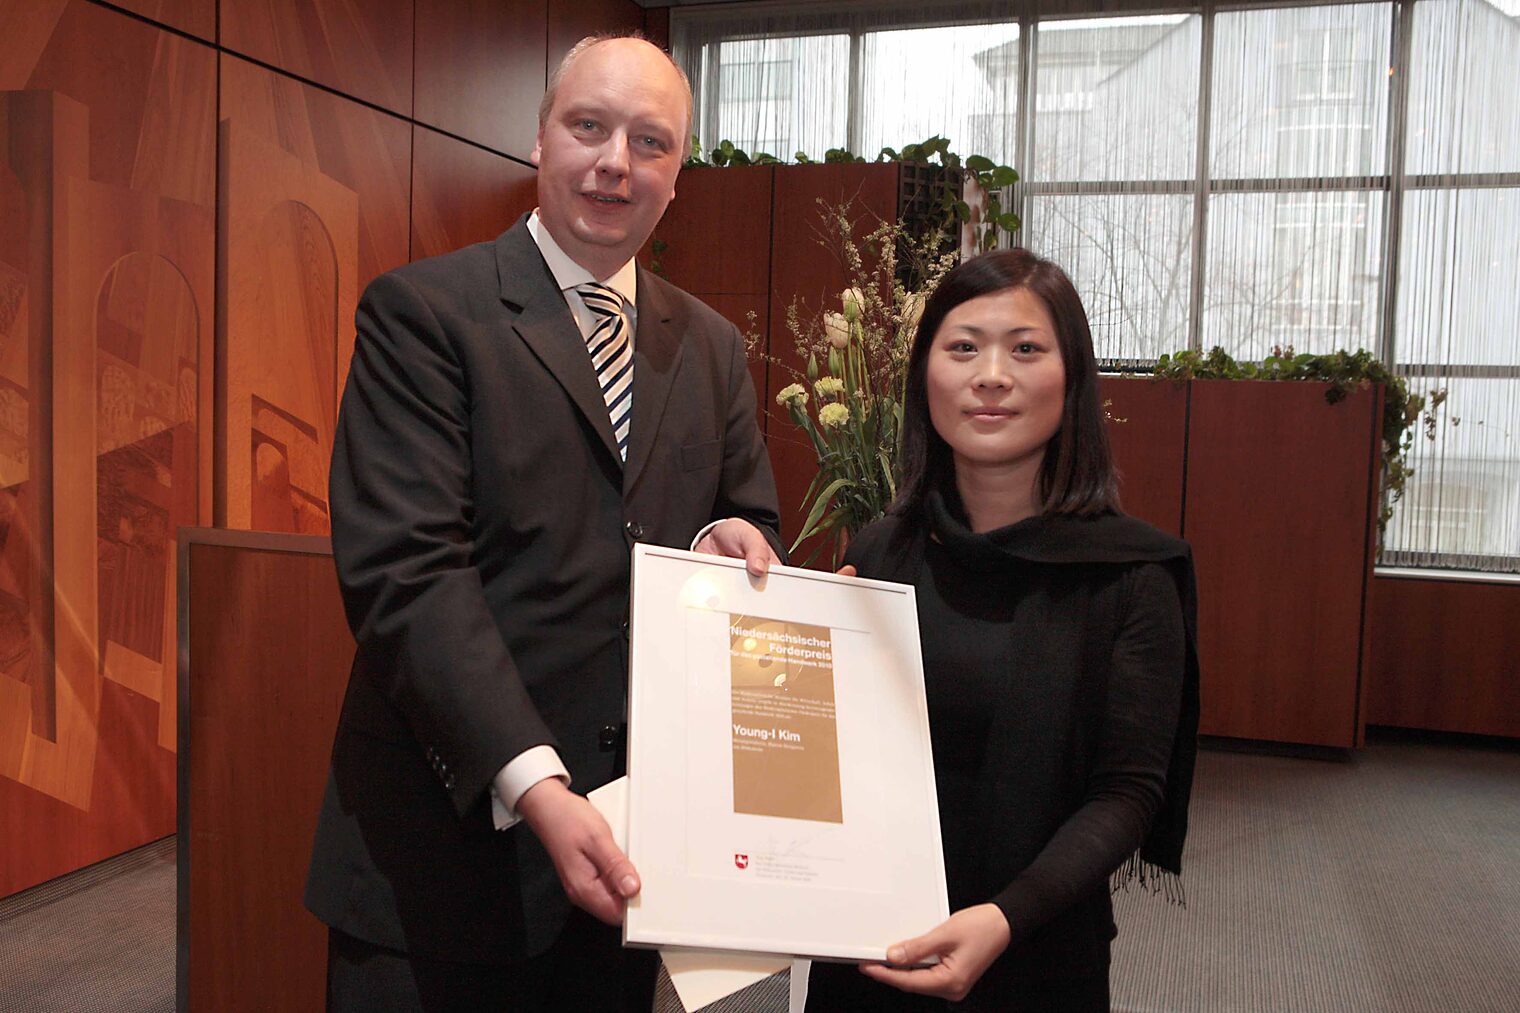 Der zweite Förderpreis für das gestaltende Handwerk 2010 ging an die gebürtige Koreanerin Young-I Kim, die 2009 an der HAWK Hildesheim ihr Studium zur Diplom-Designerin absolvierte.